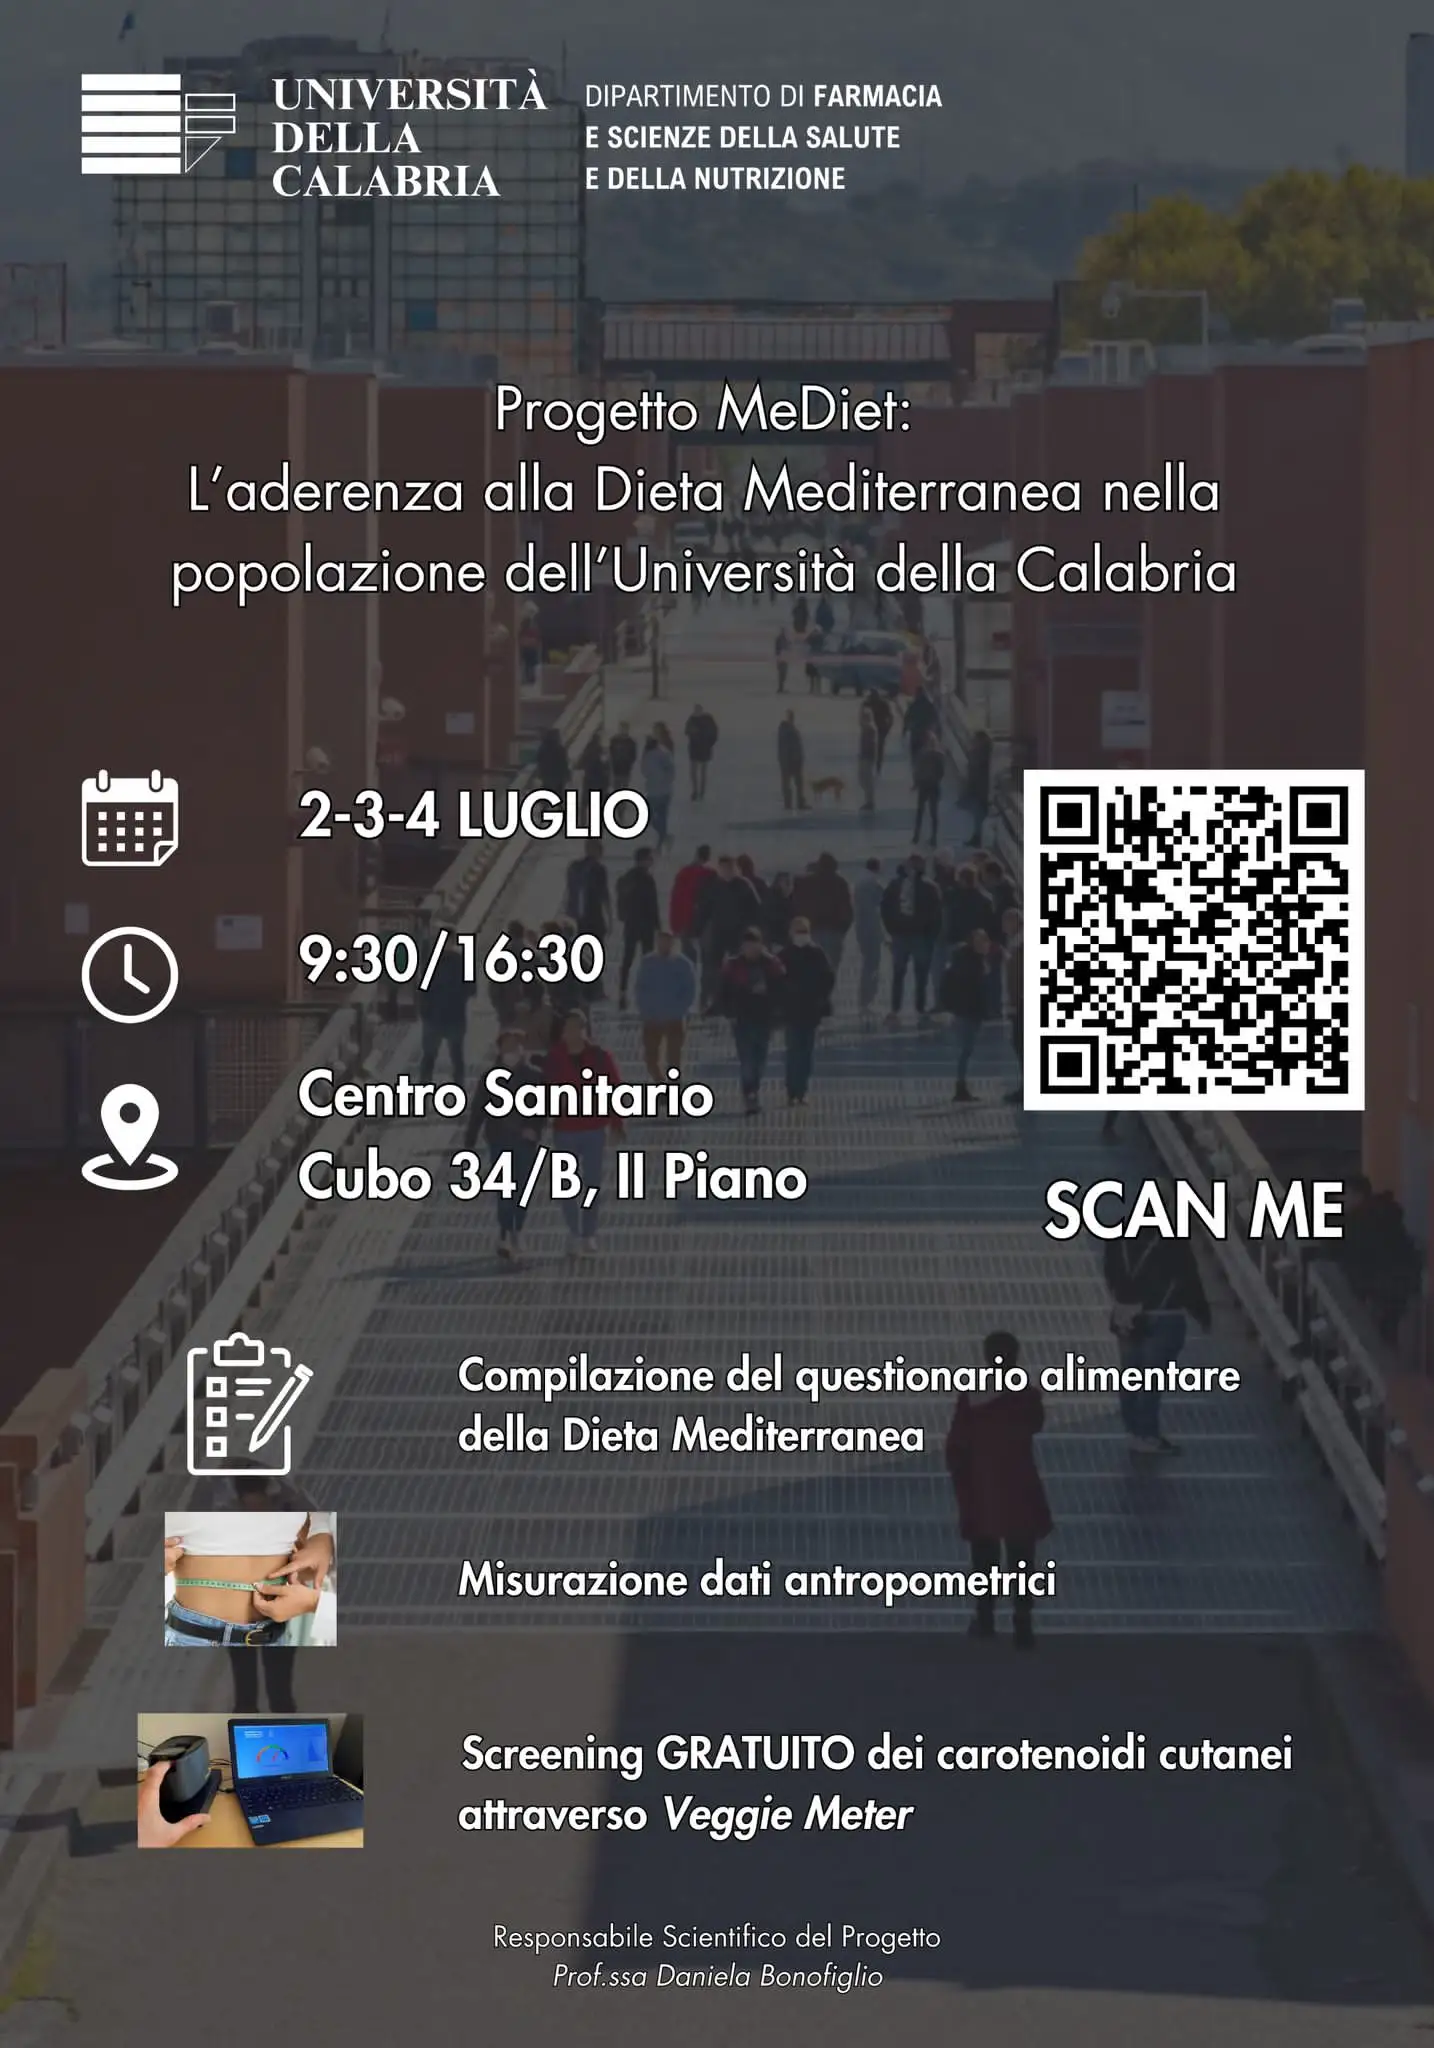 Progetto MeDiet:
L'aderenza alla Dieta Mediterranea nella popolazione dell'Università della Calabria